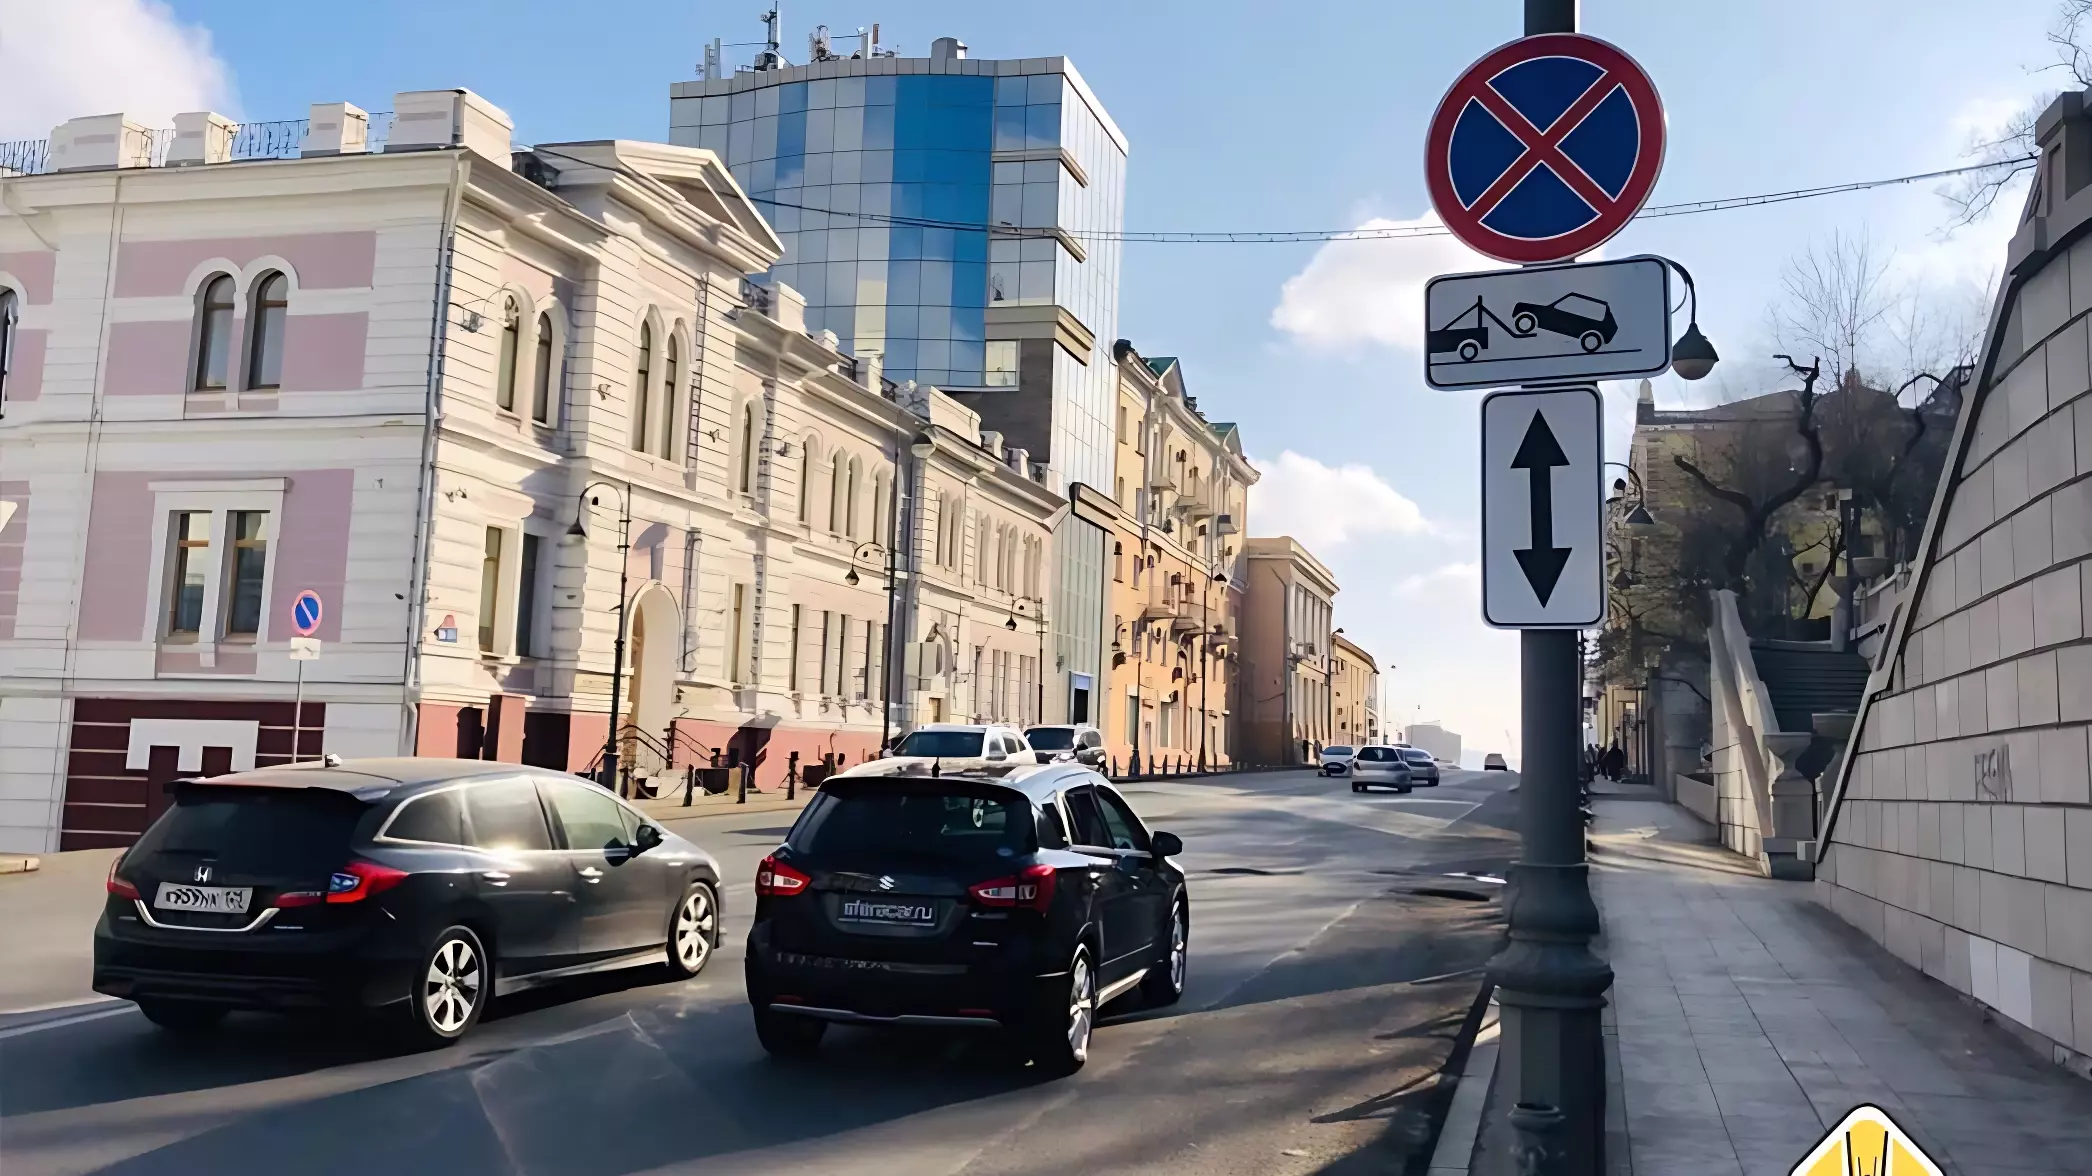 Во Владивостоке запретили остановку авто от музея Арсеньева до 1-й Морской